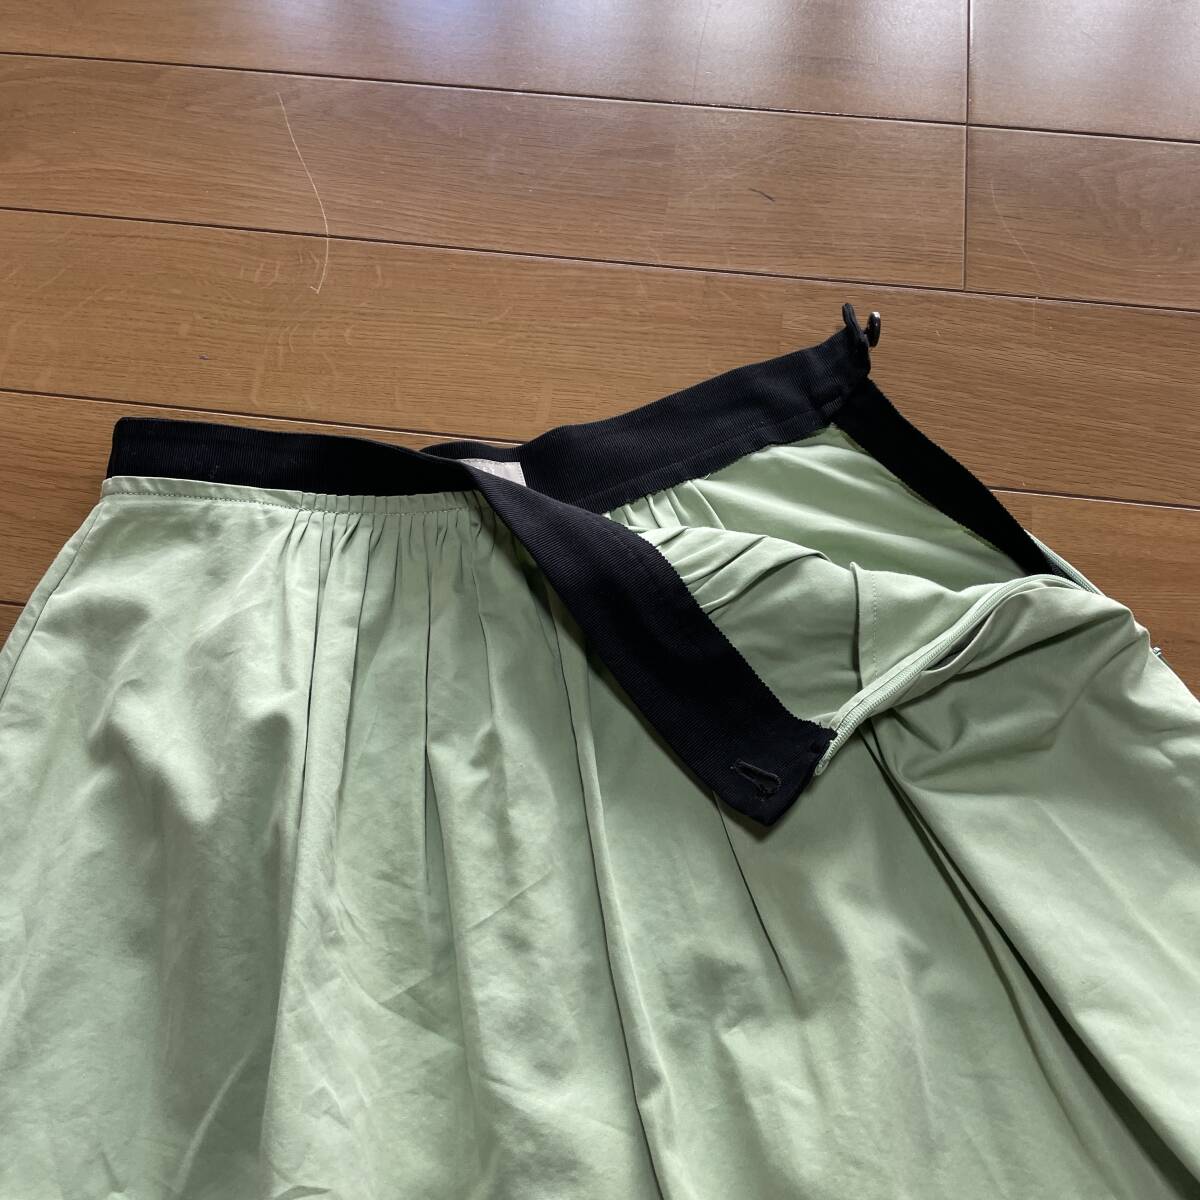 W-19 マーガレットハウエル（アングローバル・日本製） サイズ Ⅰ！ コットン（シルク18%入り）スカートの画像2